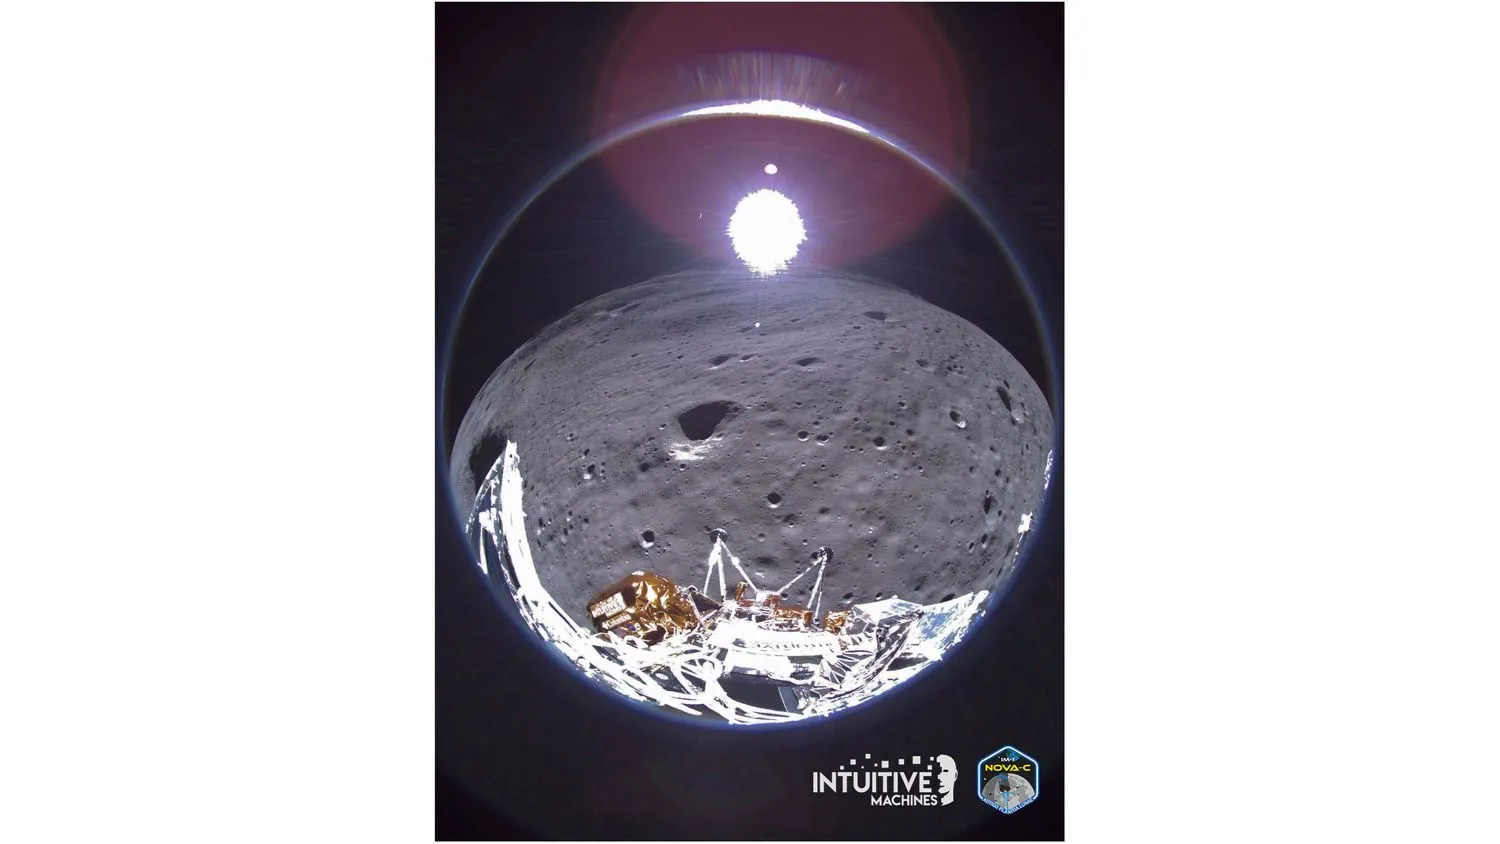 ein Fischaugenfoto, das Teile einer gold- und silberfarbenen Mondlandefähre im Vordergrund zeigt, mit dem grauen Schmutz des Mondes und der hellen Sonne im Hintergrund.